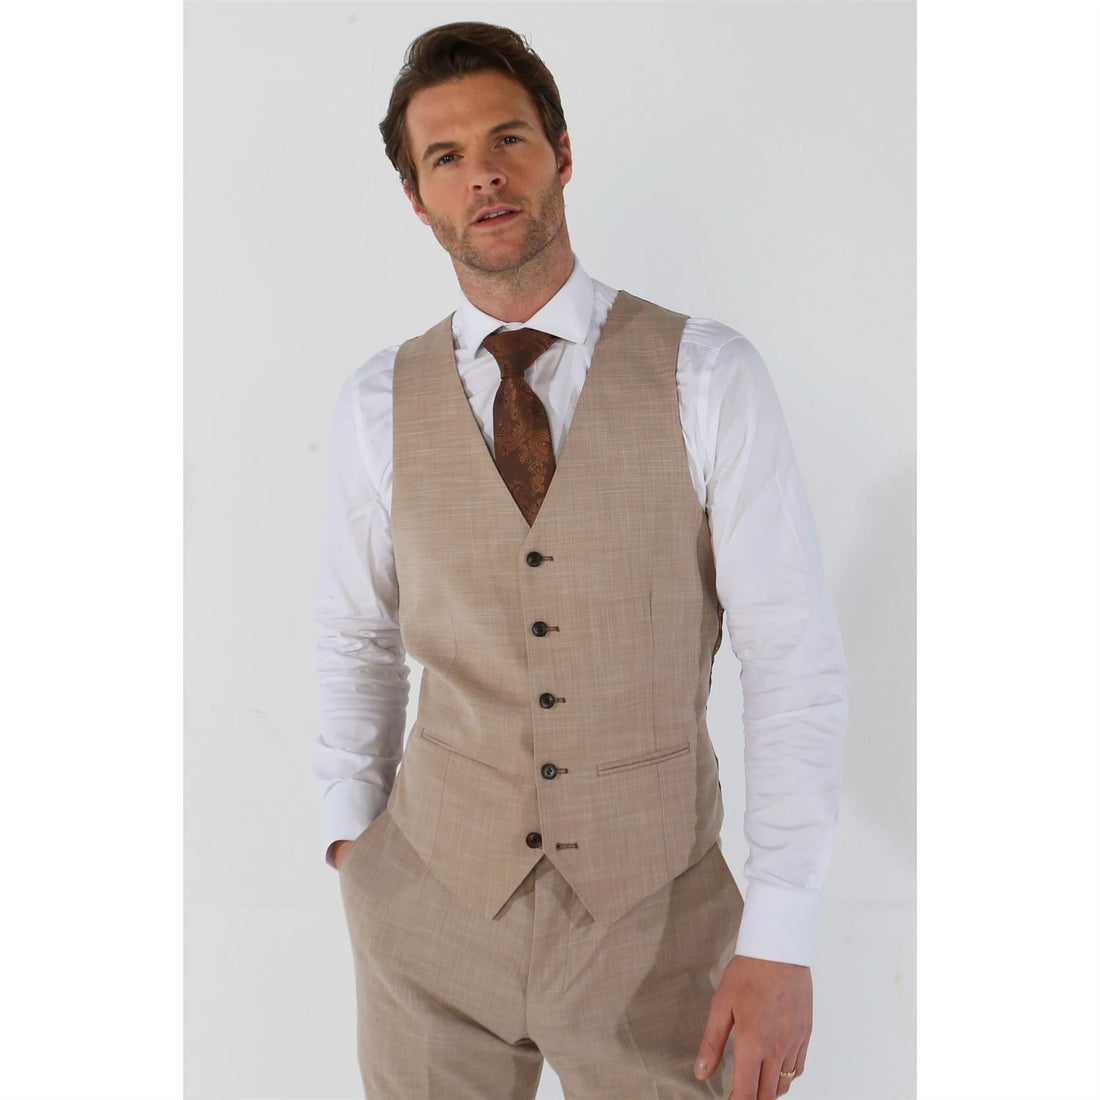 Men's Waistcoat Beige Tailored Fit Summer Wedding Vest